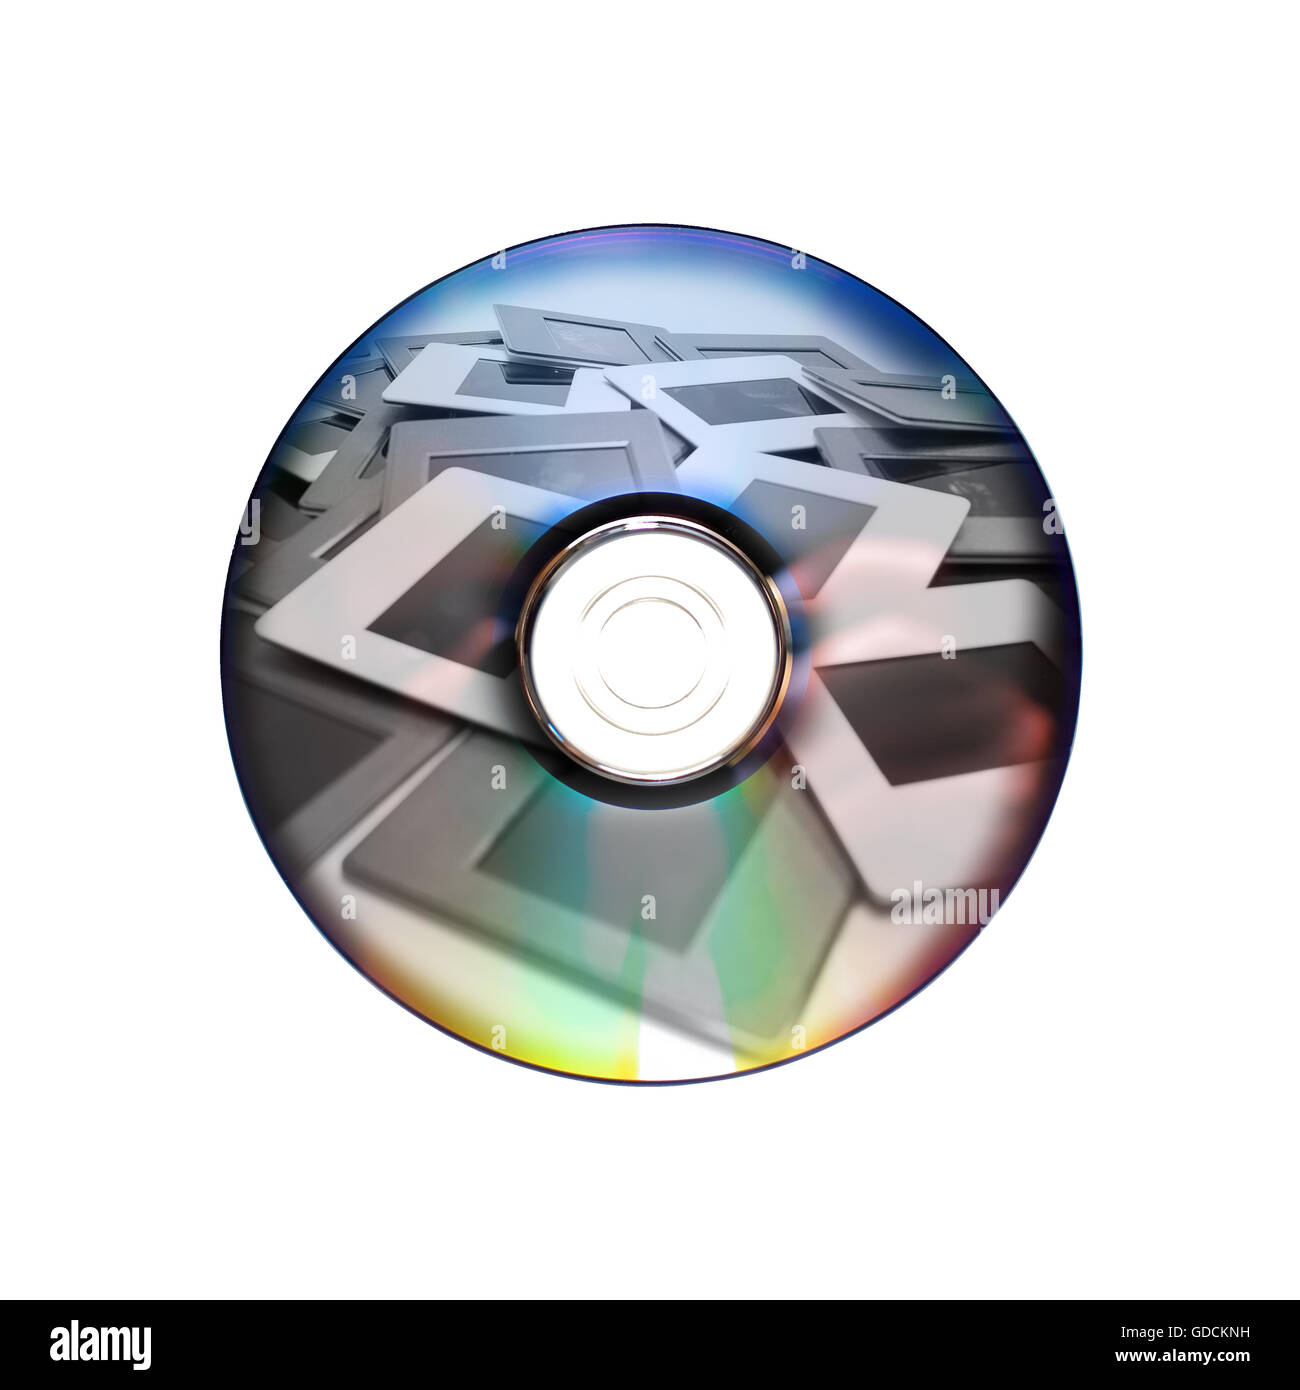 Vieilles diapositives et nouveau dvd : deux systèmes d'archivage d'images Banque D'Images